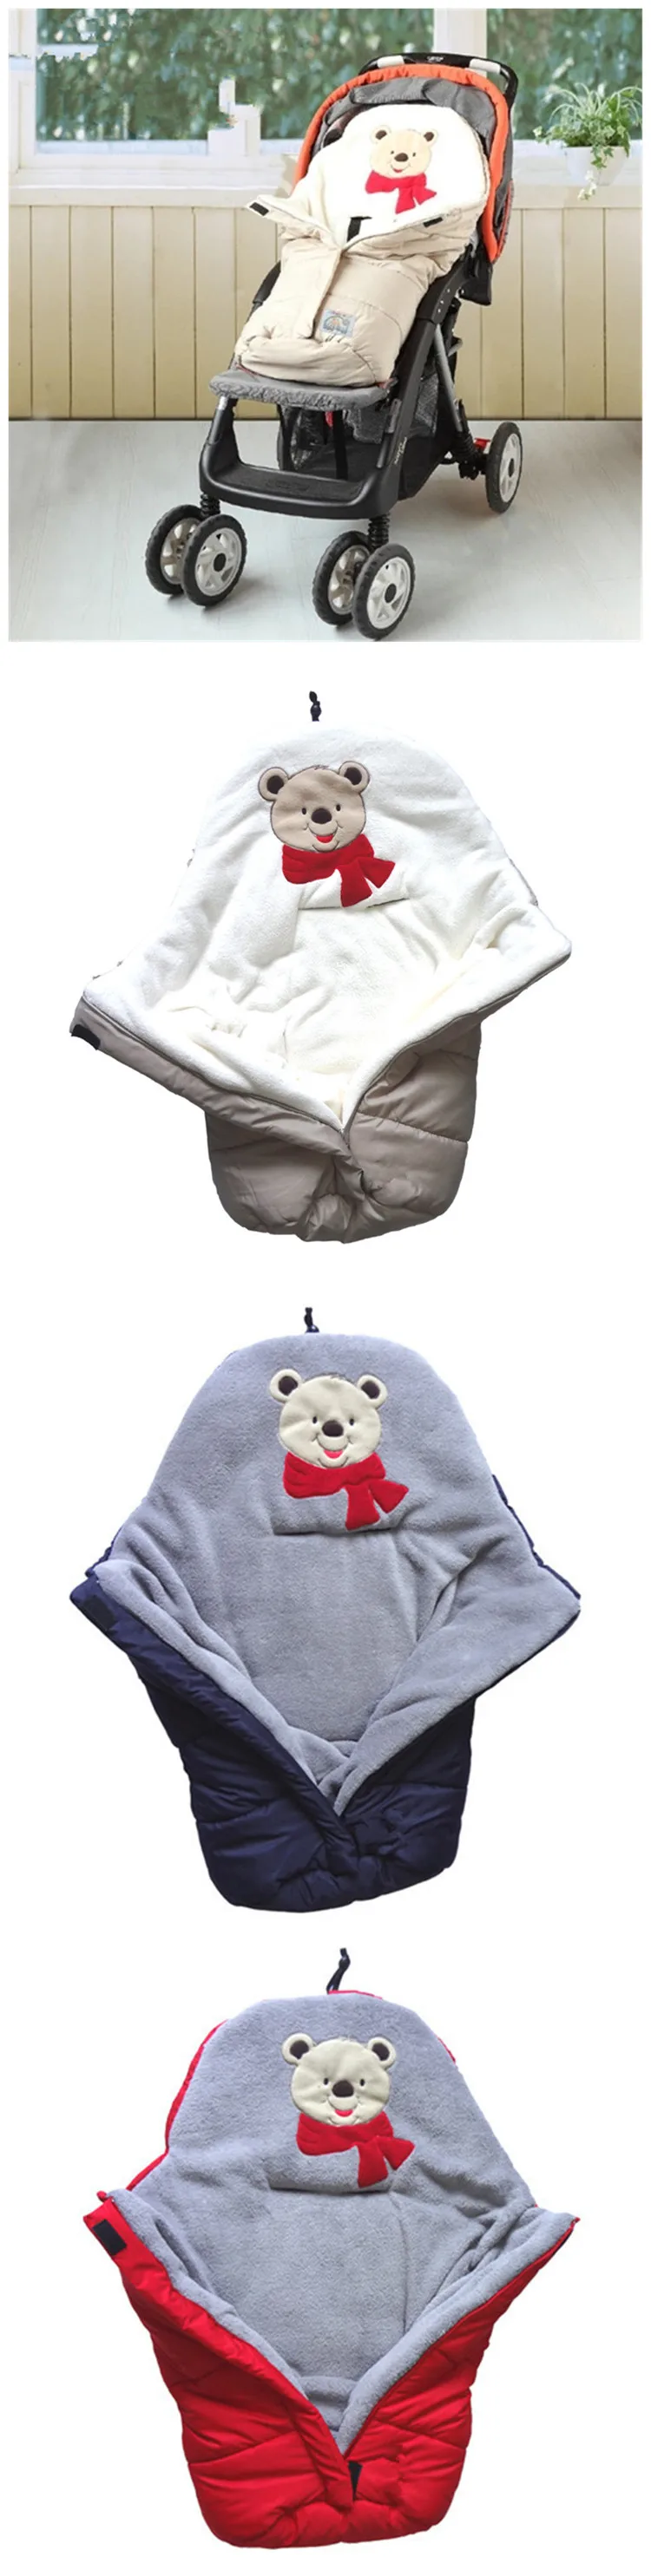 Конверт для новорожденной детской коляски, спальный мешок, сумка для ног, детская складная прогулочная коляска, чехол для детской коляски, зимняя пеленка